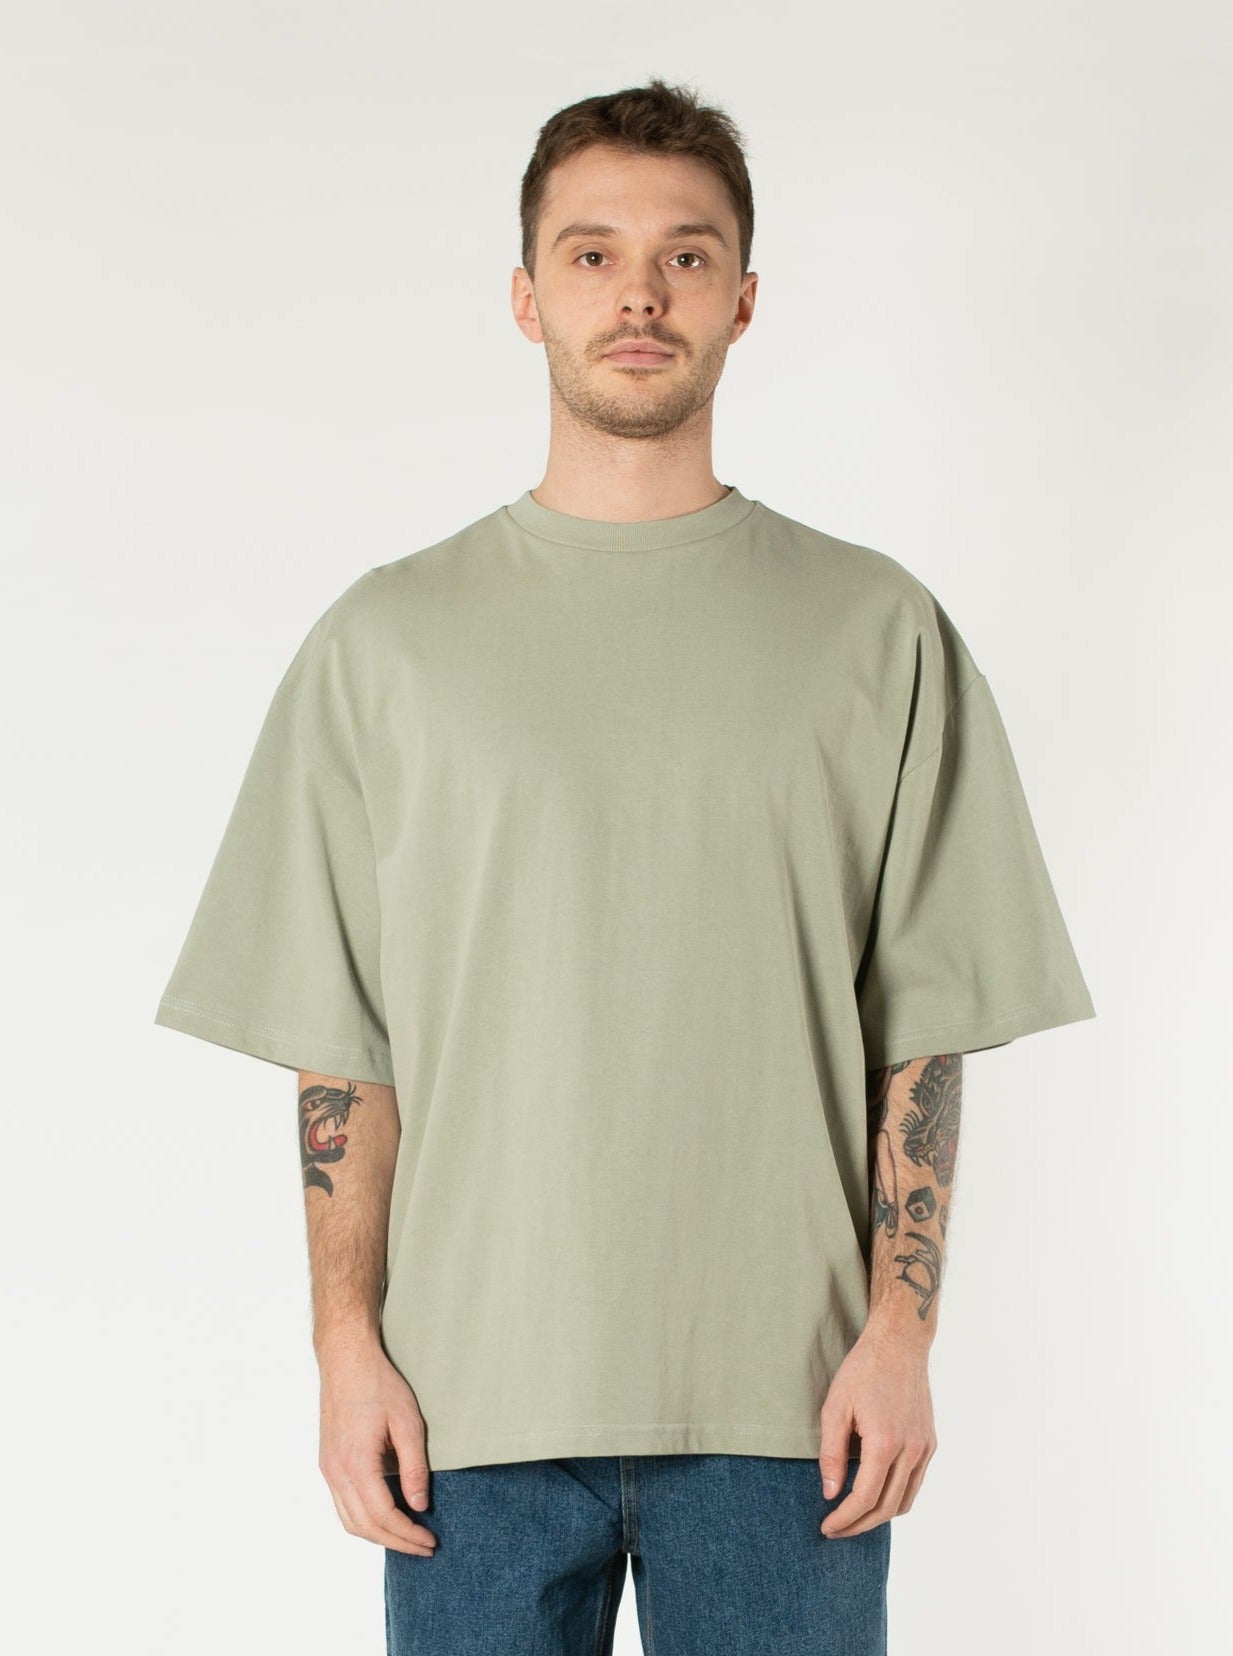 ESSENTIAL OVERSIZED T-SHIRT  Men's t-shirt, blank t-shirt - OFF